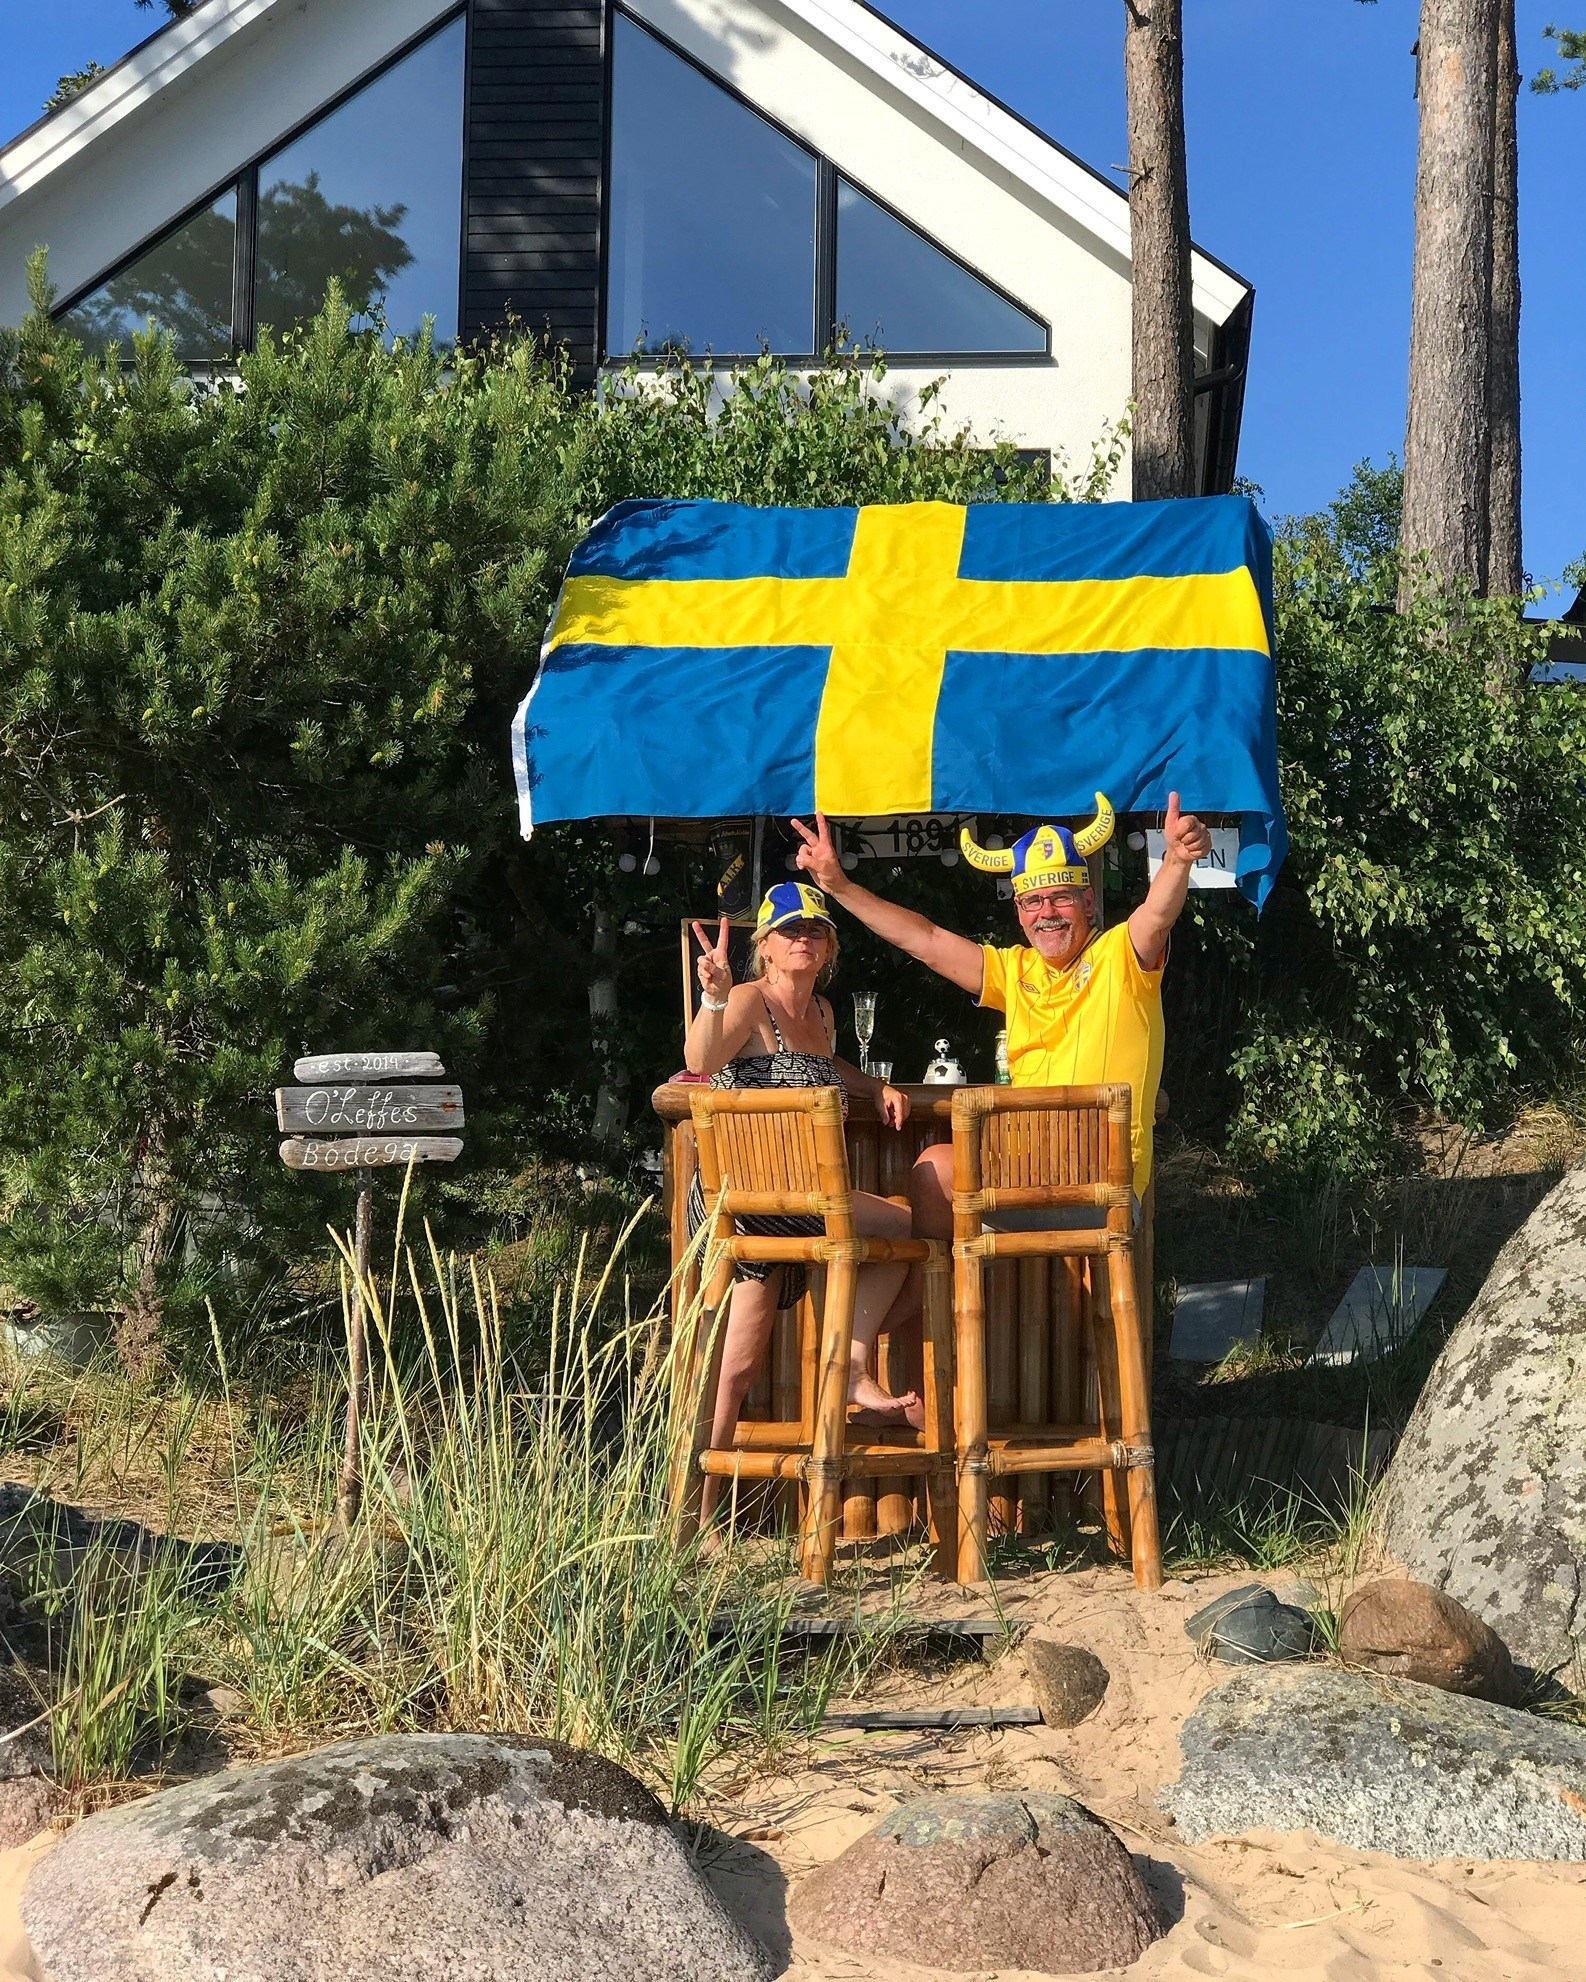 Två personer står intill en utebar på en strand och tittar mot kameran. De är iklädda huvudbonader för svenska supporters. Taket till baren är prytt av en svensk flagga.